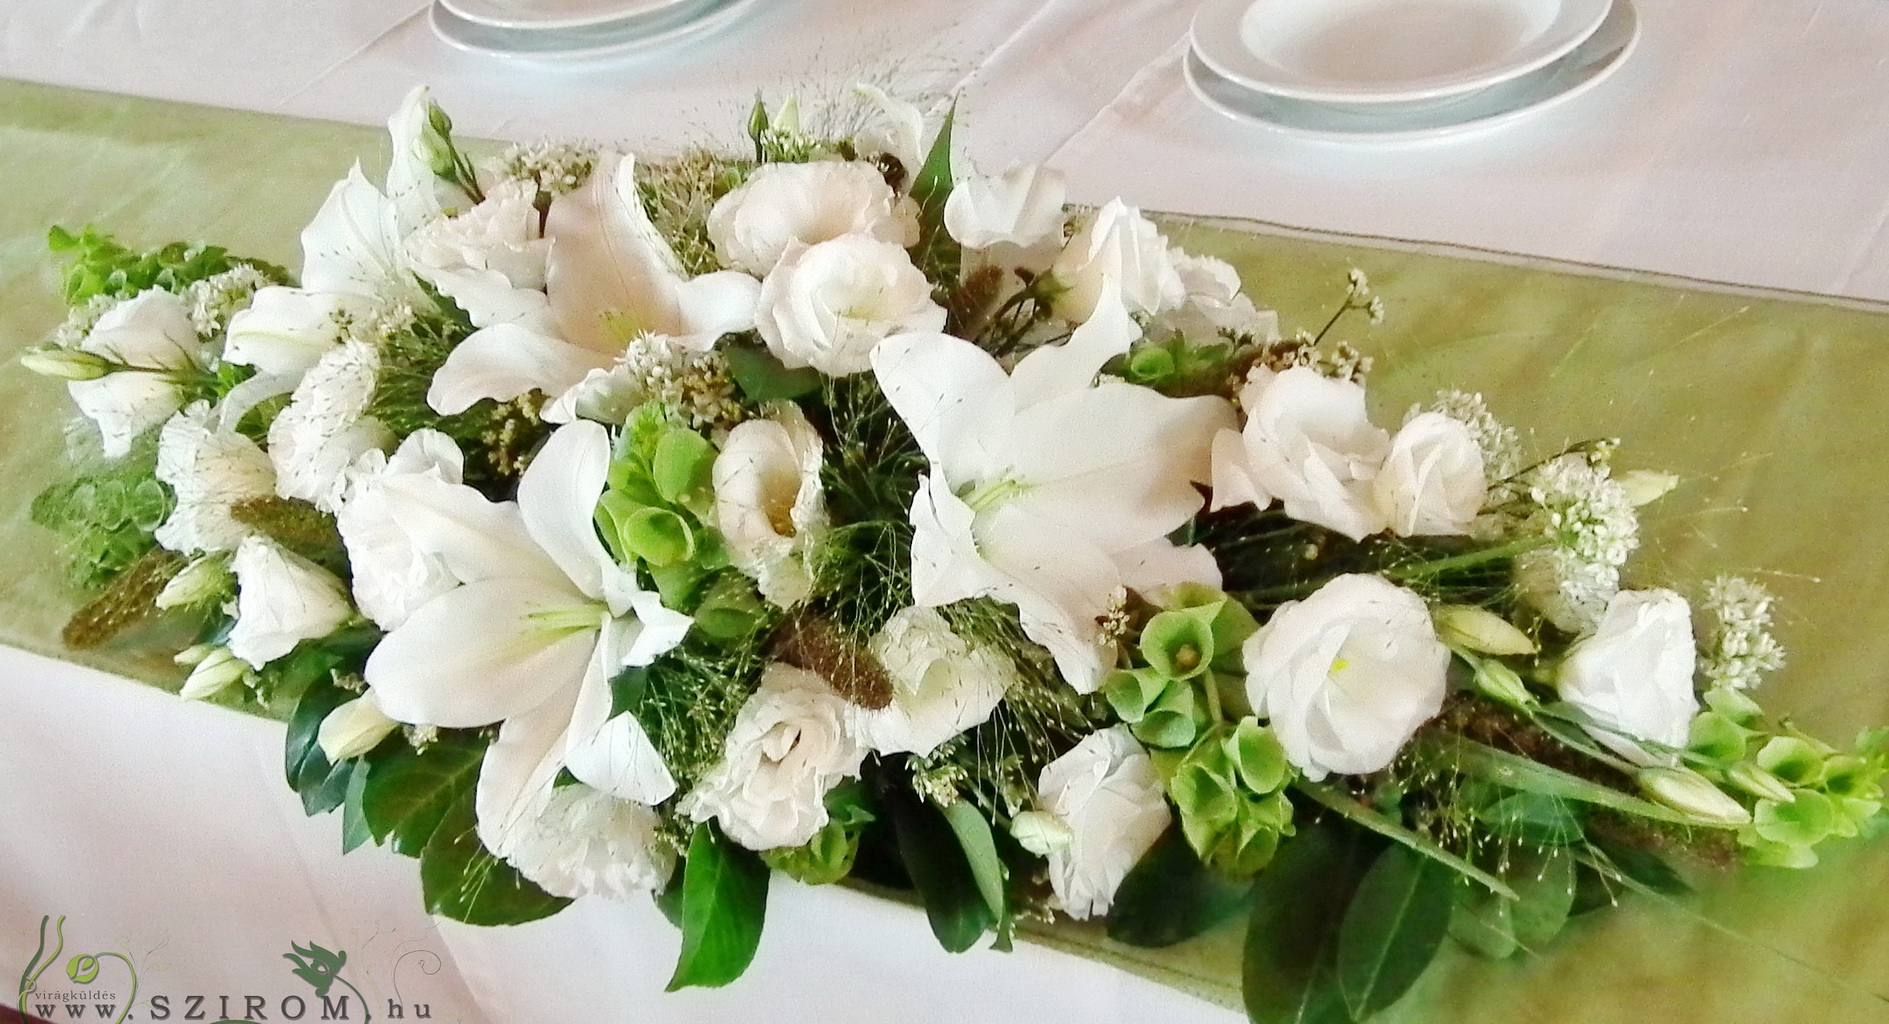 Virágküldés Budapest - főasztaldísz (liliom, liziantusz, hagymavirág, fehér), Kőhegy Fogadó, esküvő